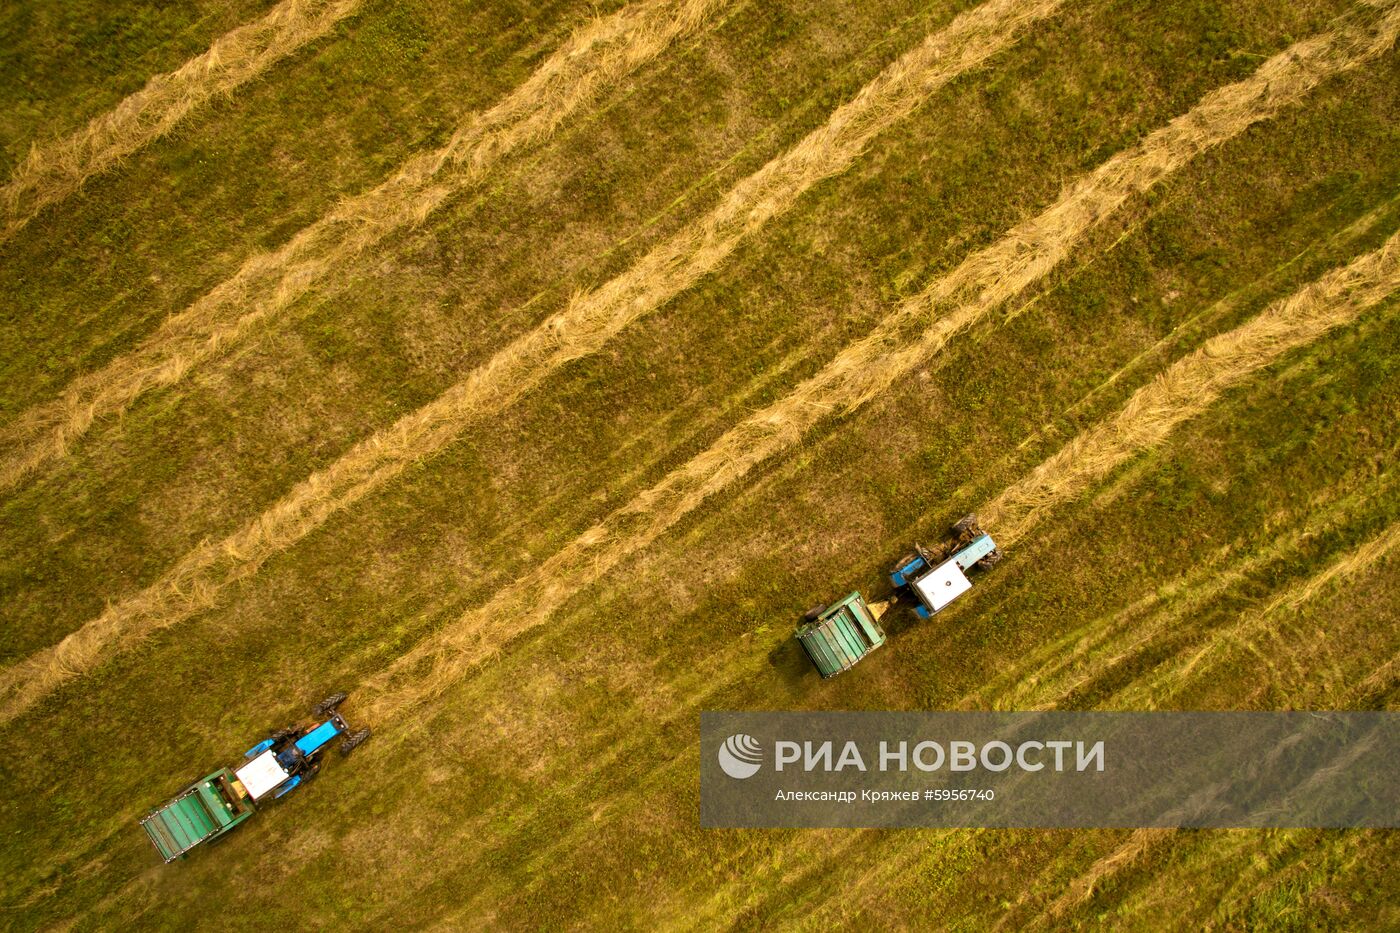 Сельскохозяйственные работы в Новосибирской области